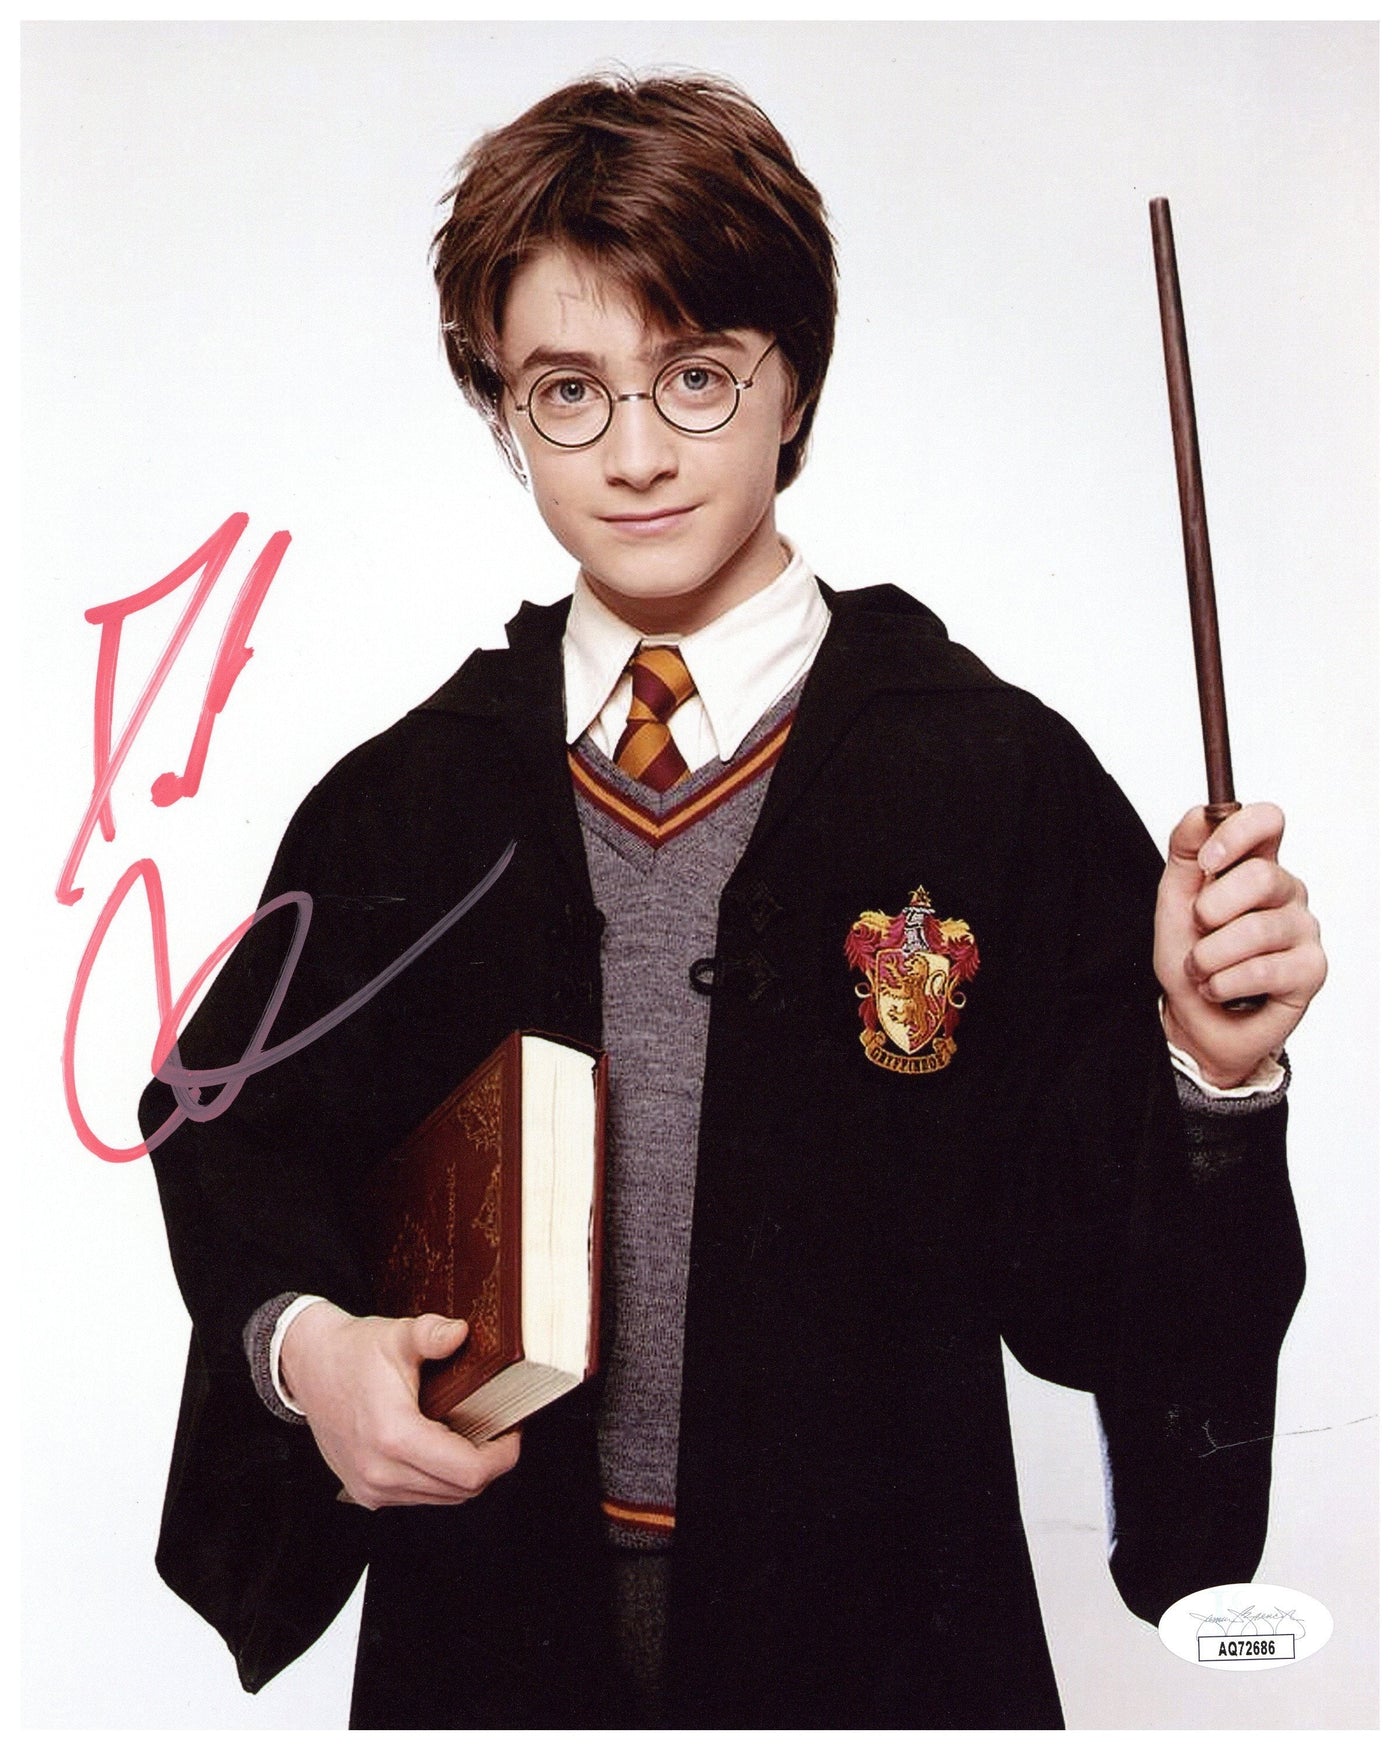 Daniel Radcliffe Signed 8x10 Photo Harry Potter Authentic Autographed JSA COA 3